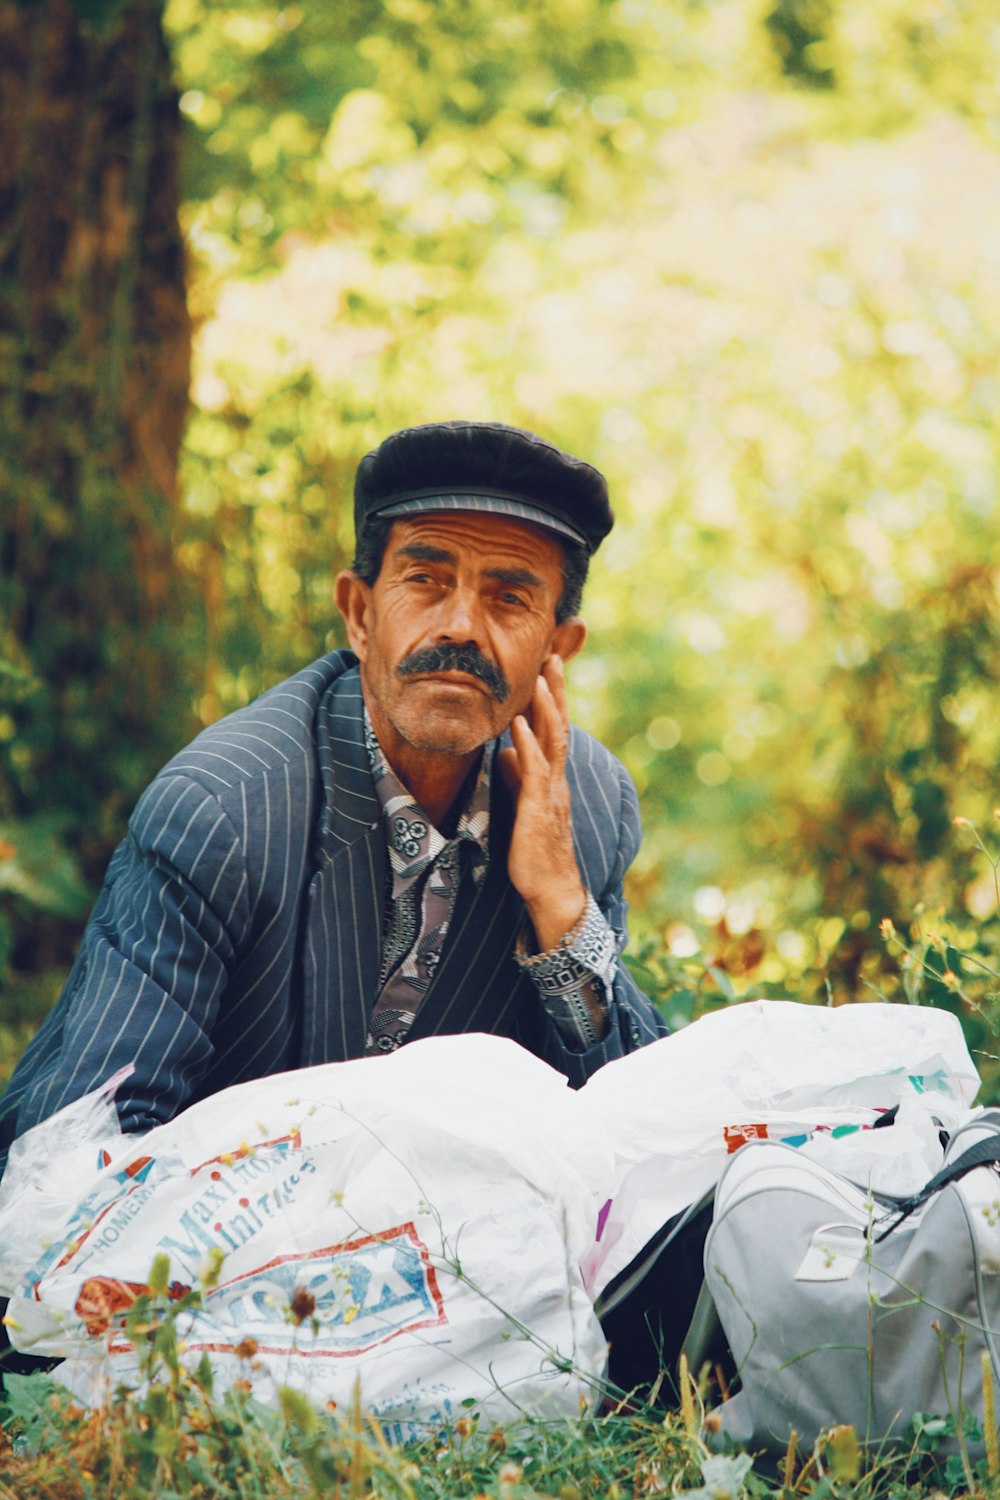 야외 푸른 잔디밭에 앉아있는 모자를 쓴 남자